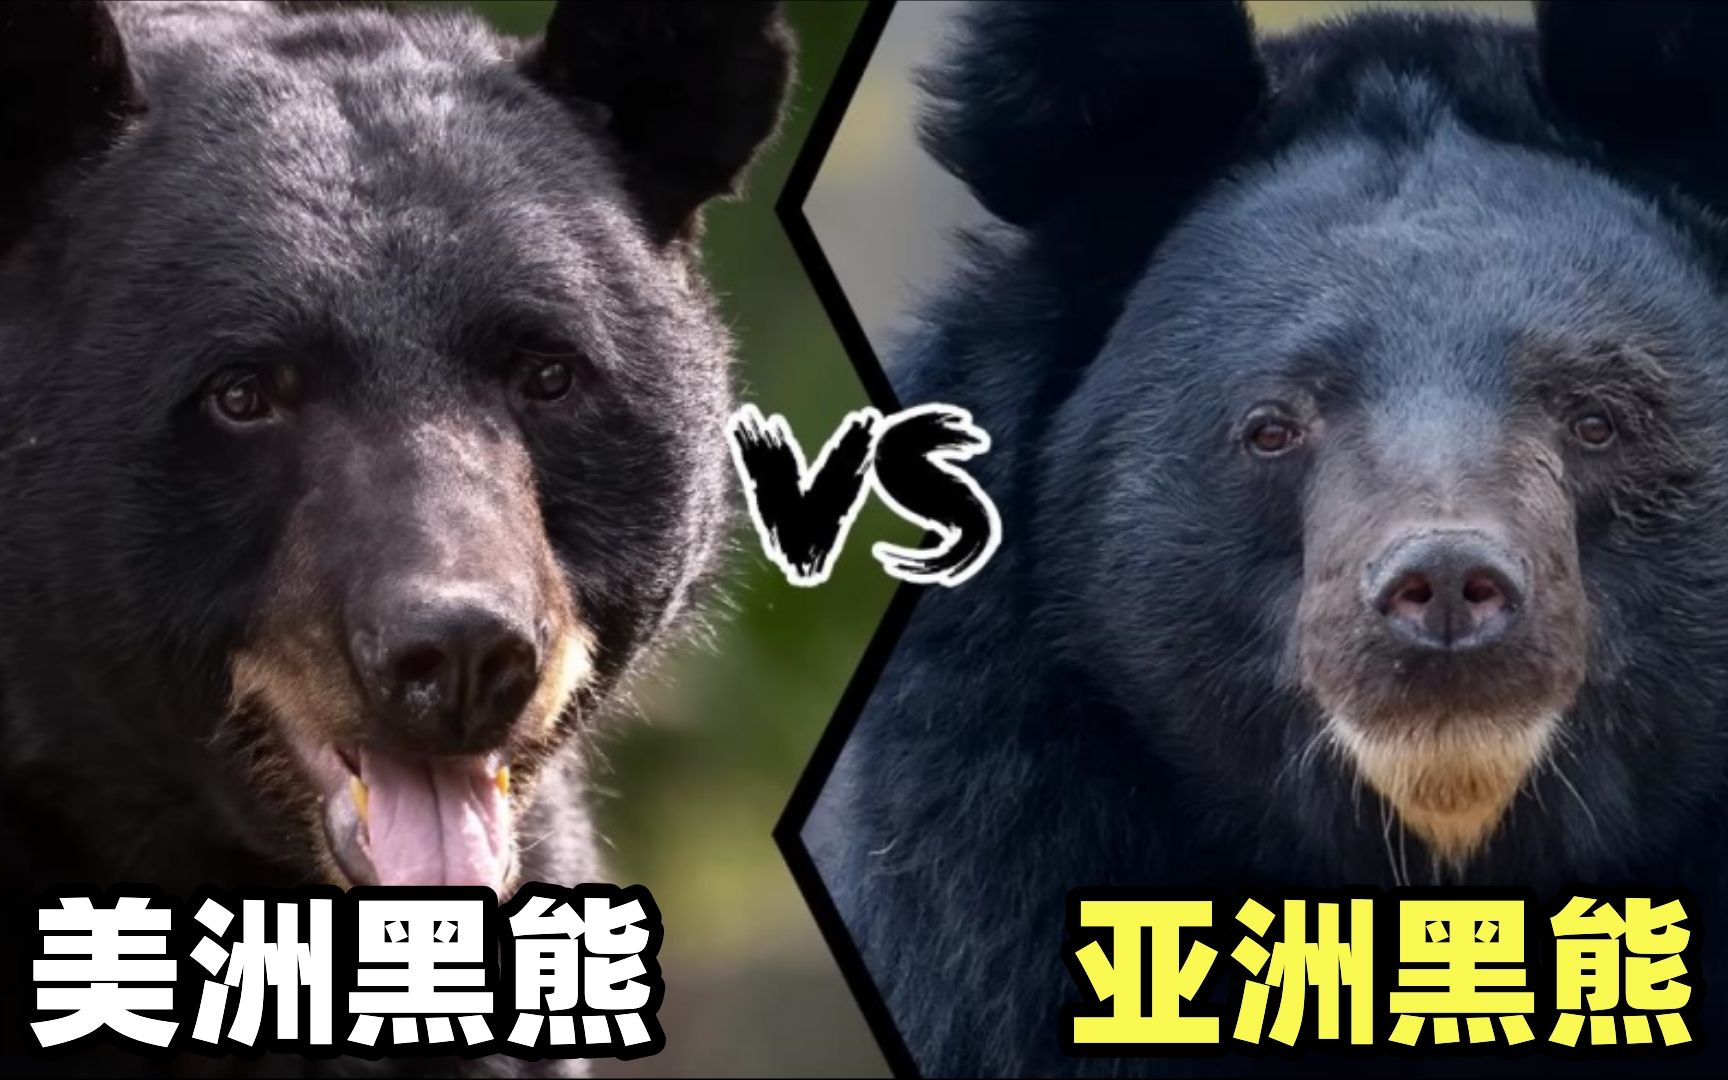 美洲黑熊vs亚洲黑熊,当东北虎杀手遇到孟加拉虎克星,谁更强呢?